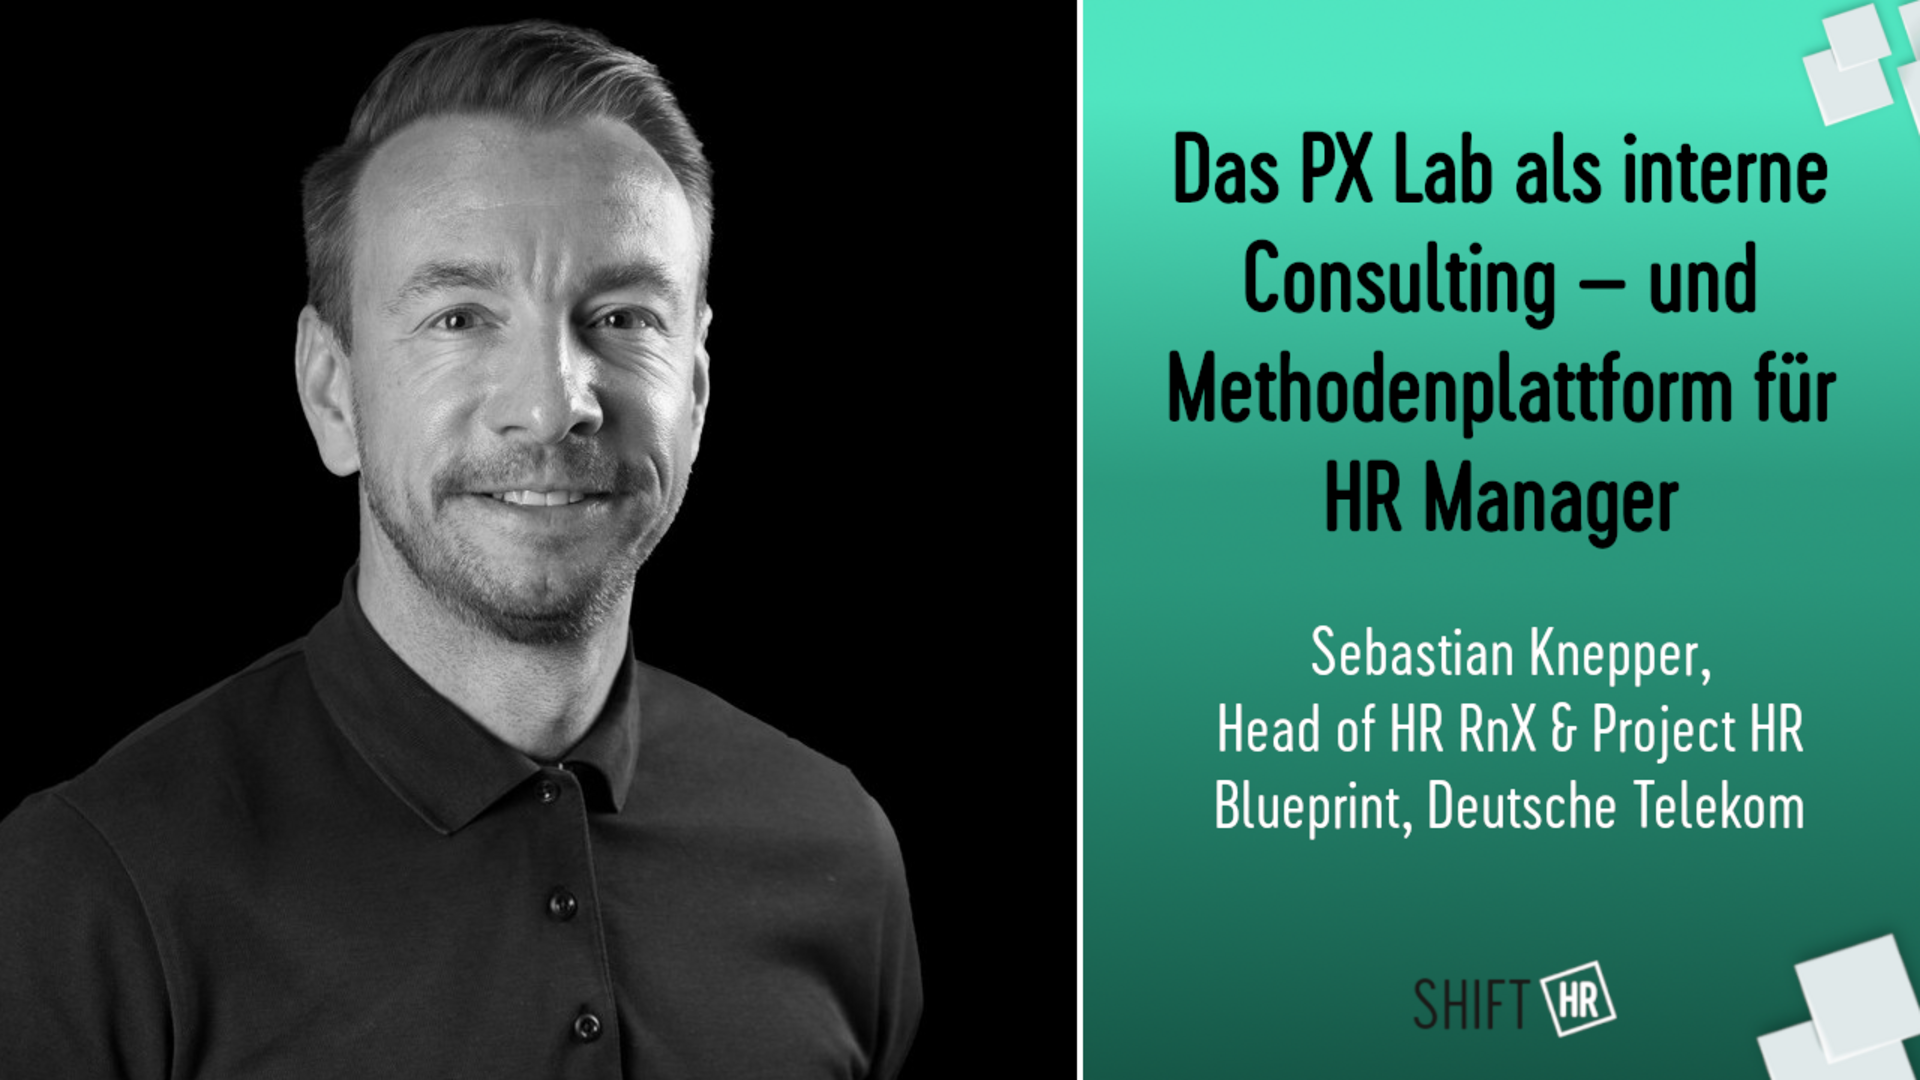 Das PX Lab als interne Consulting- und Methodenplattform für HR Manager